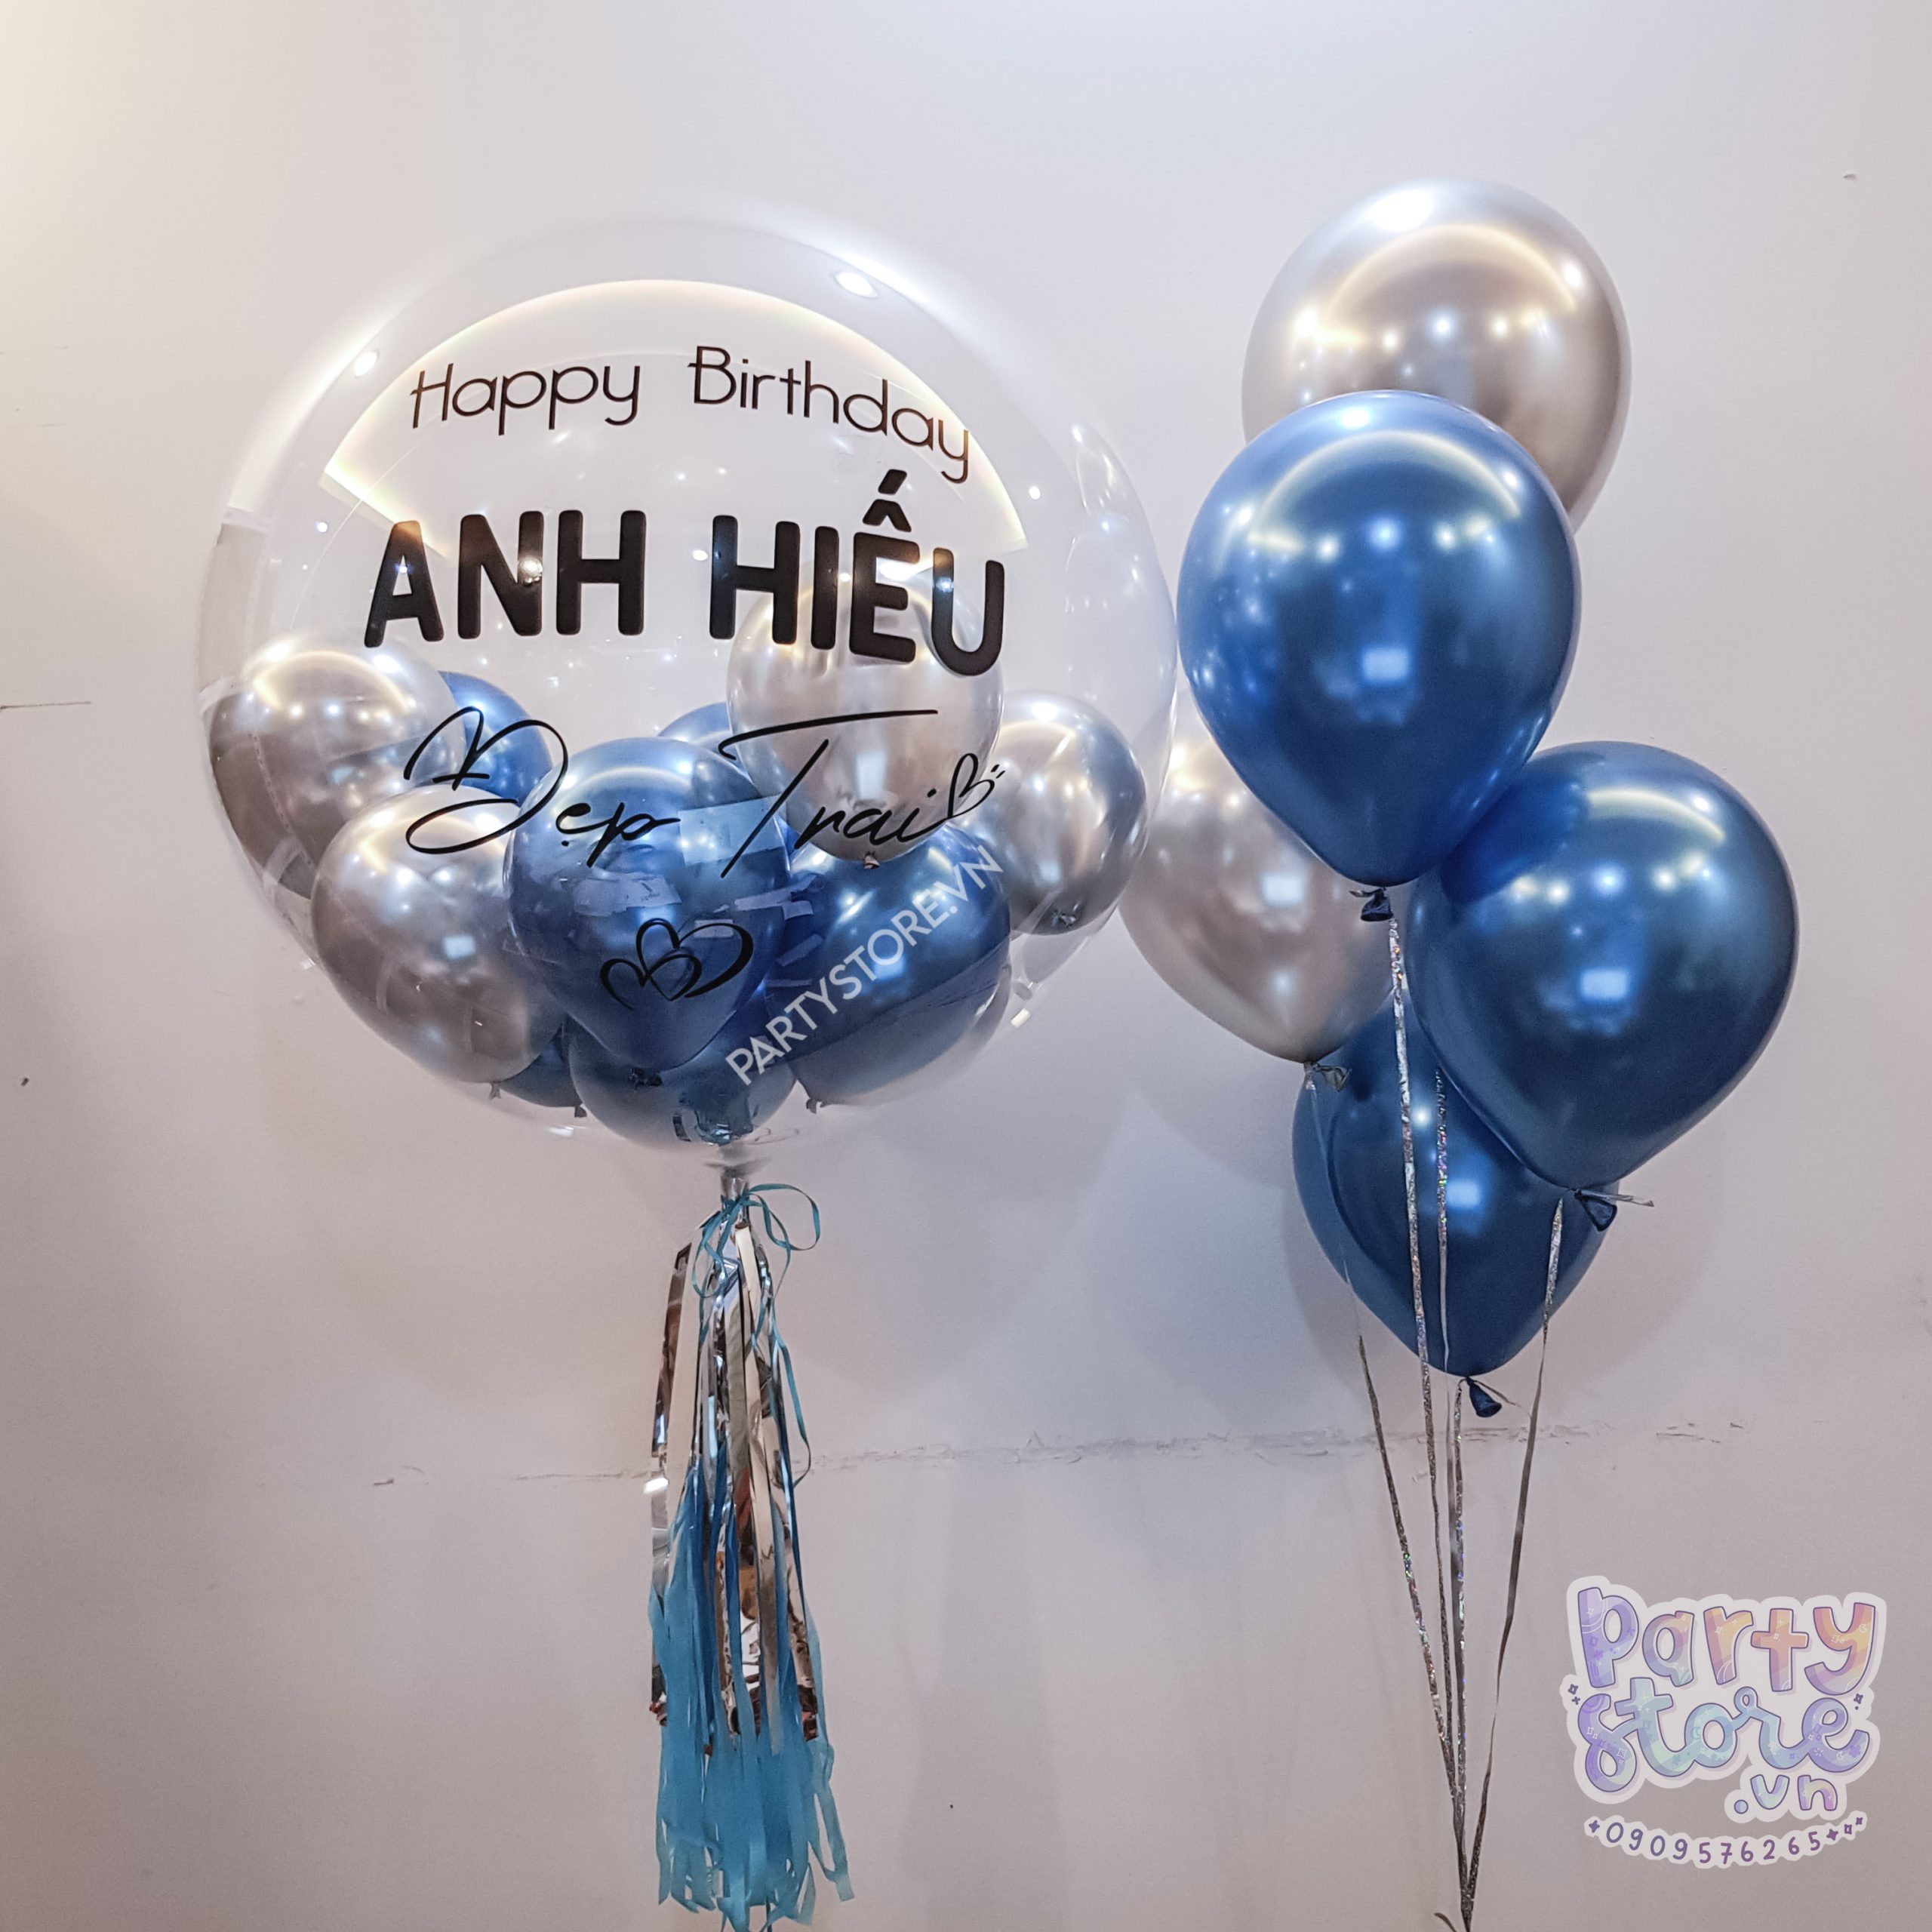 Chill decor dịch vụ trang trí sinh nhật uy tín tại Hà Nội